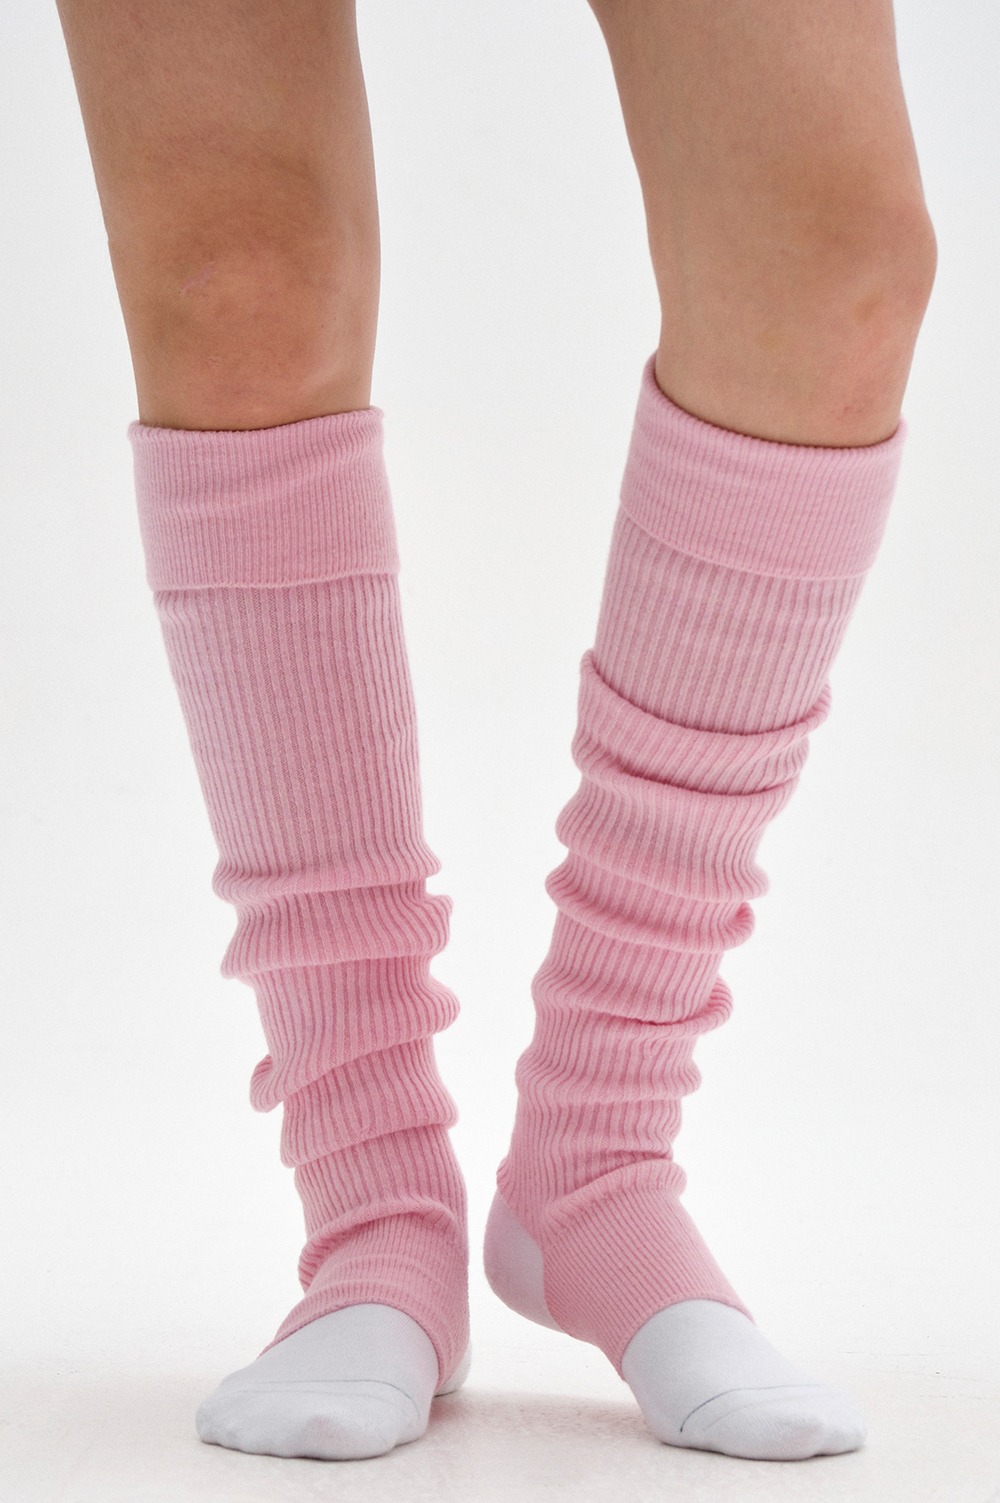 clove - [23FW clove] Knit Leg Warmer (Pink)